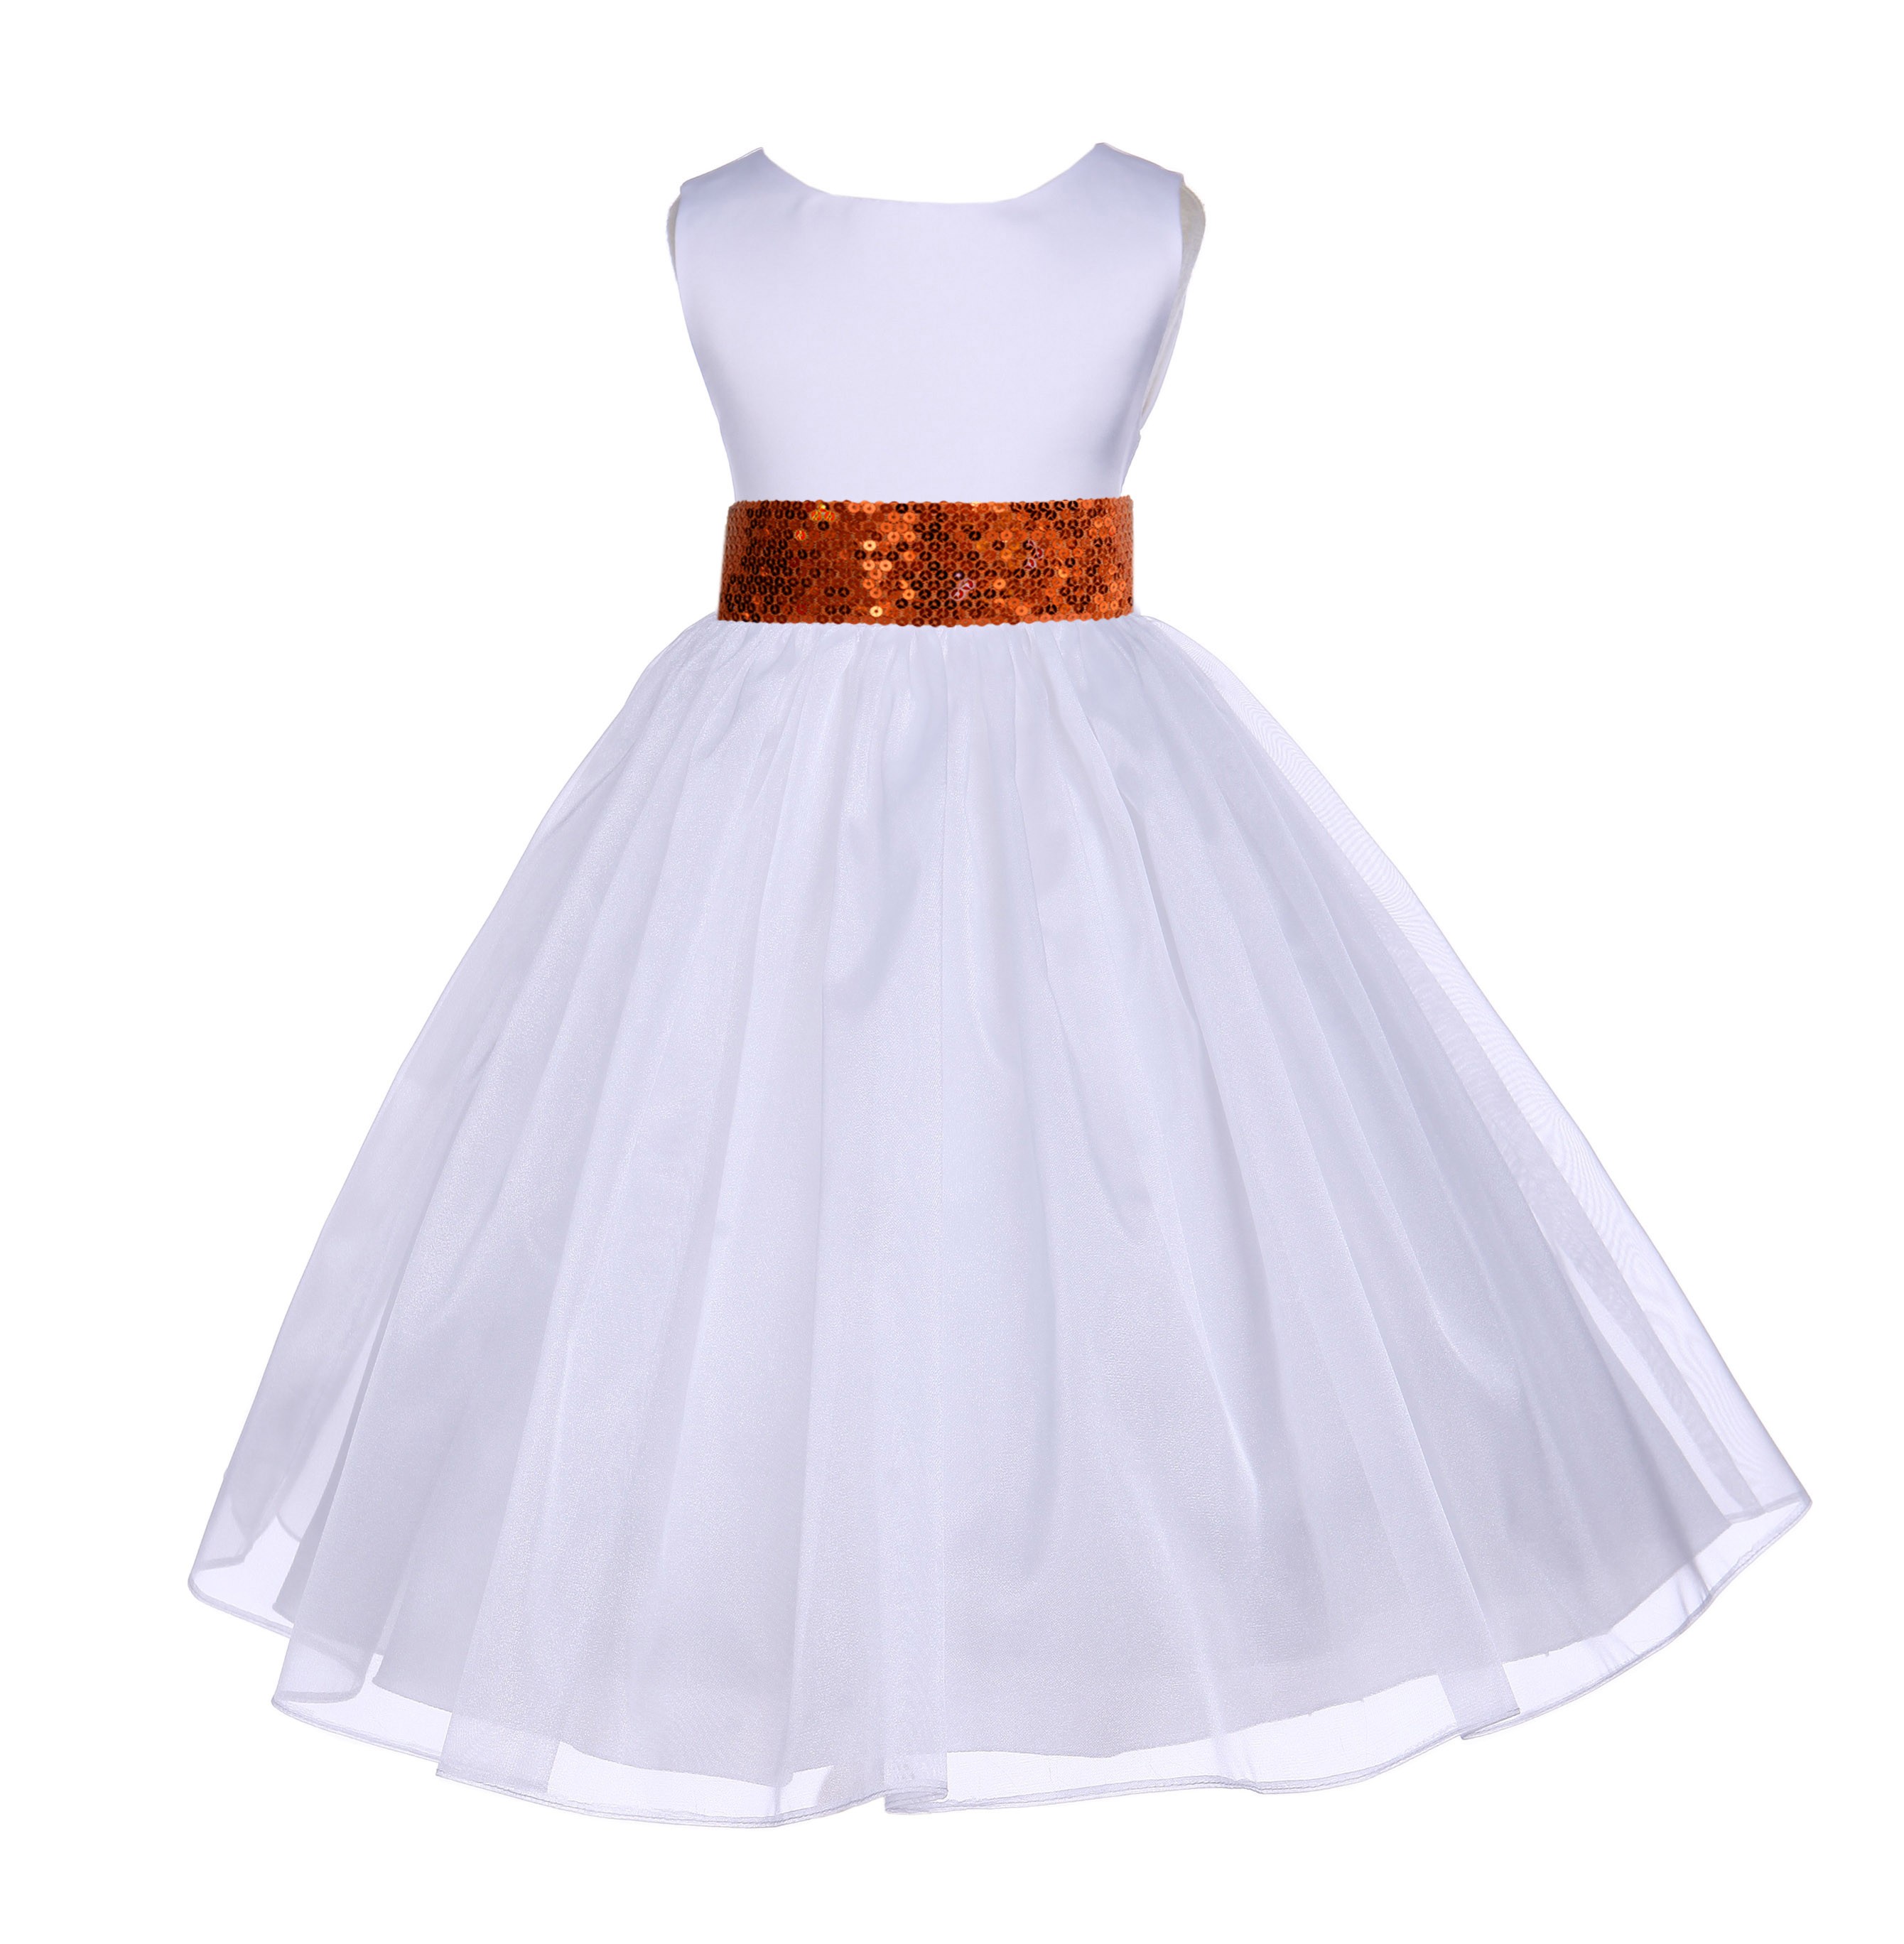 White Shimmering Organza Orange Sequin Sash Flower Girl Dress 841mh